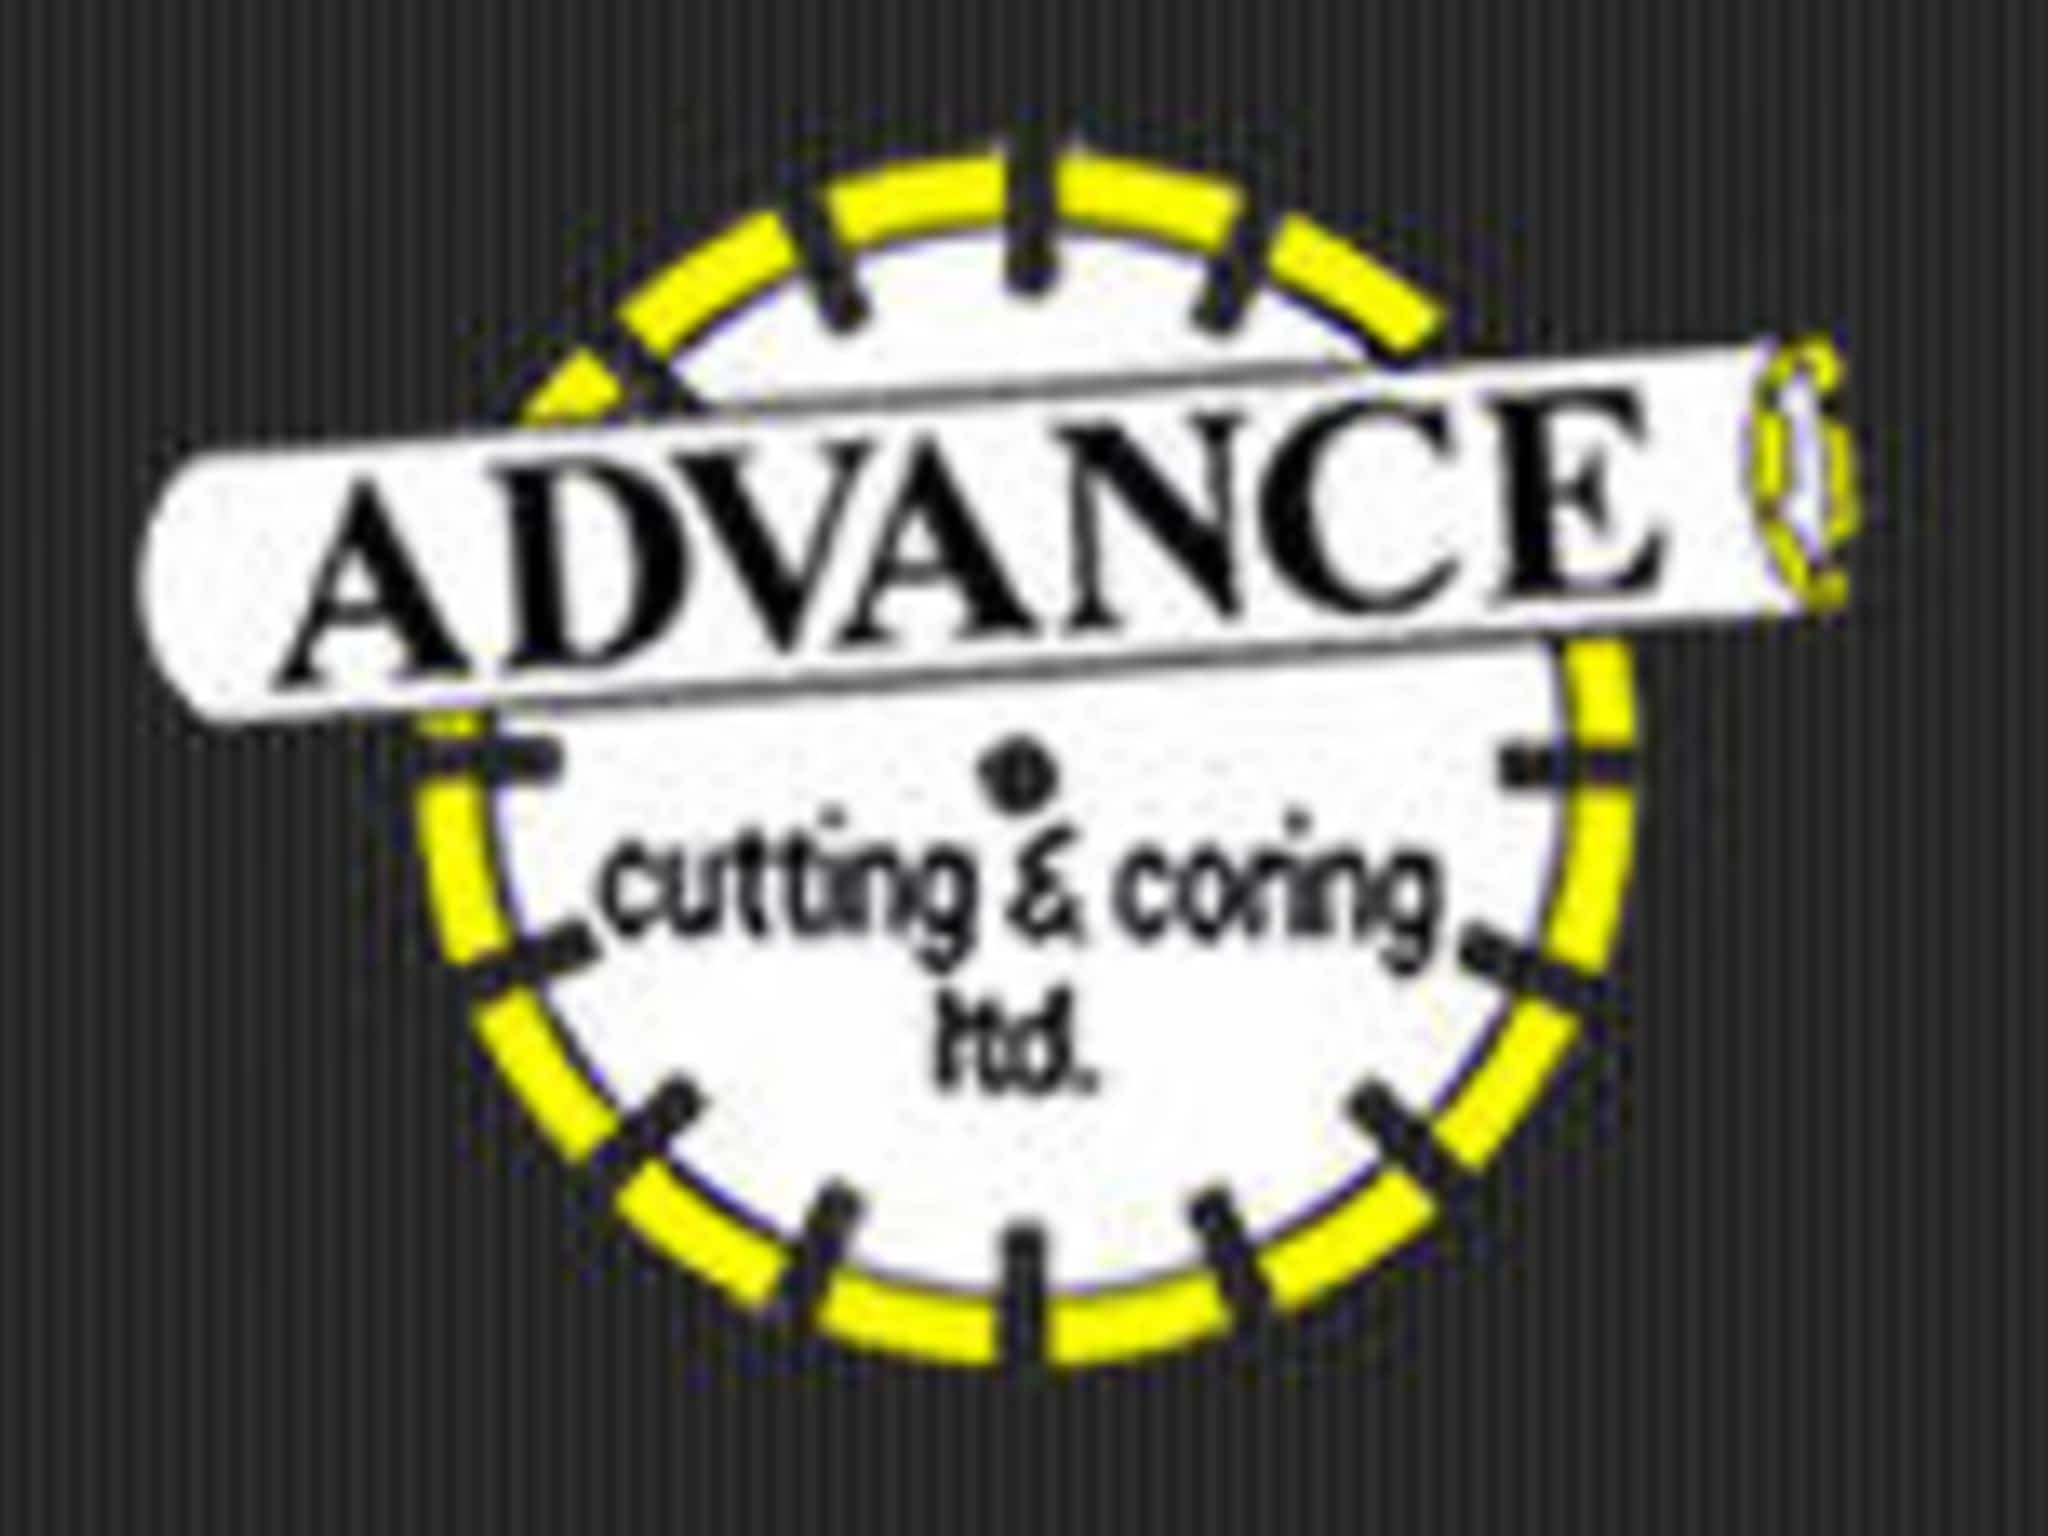 photo Advance Cutting & Coring